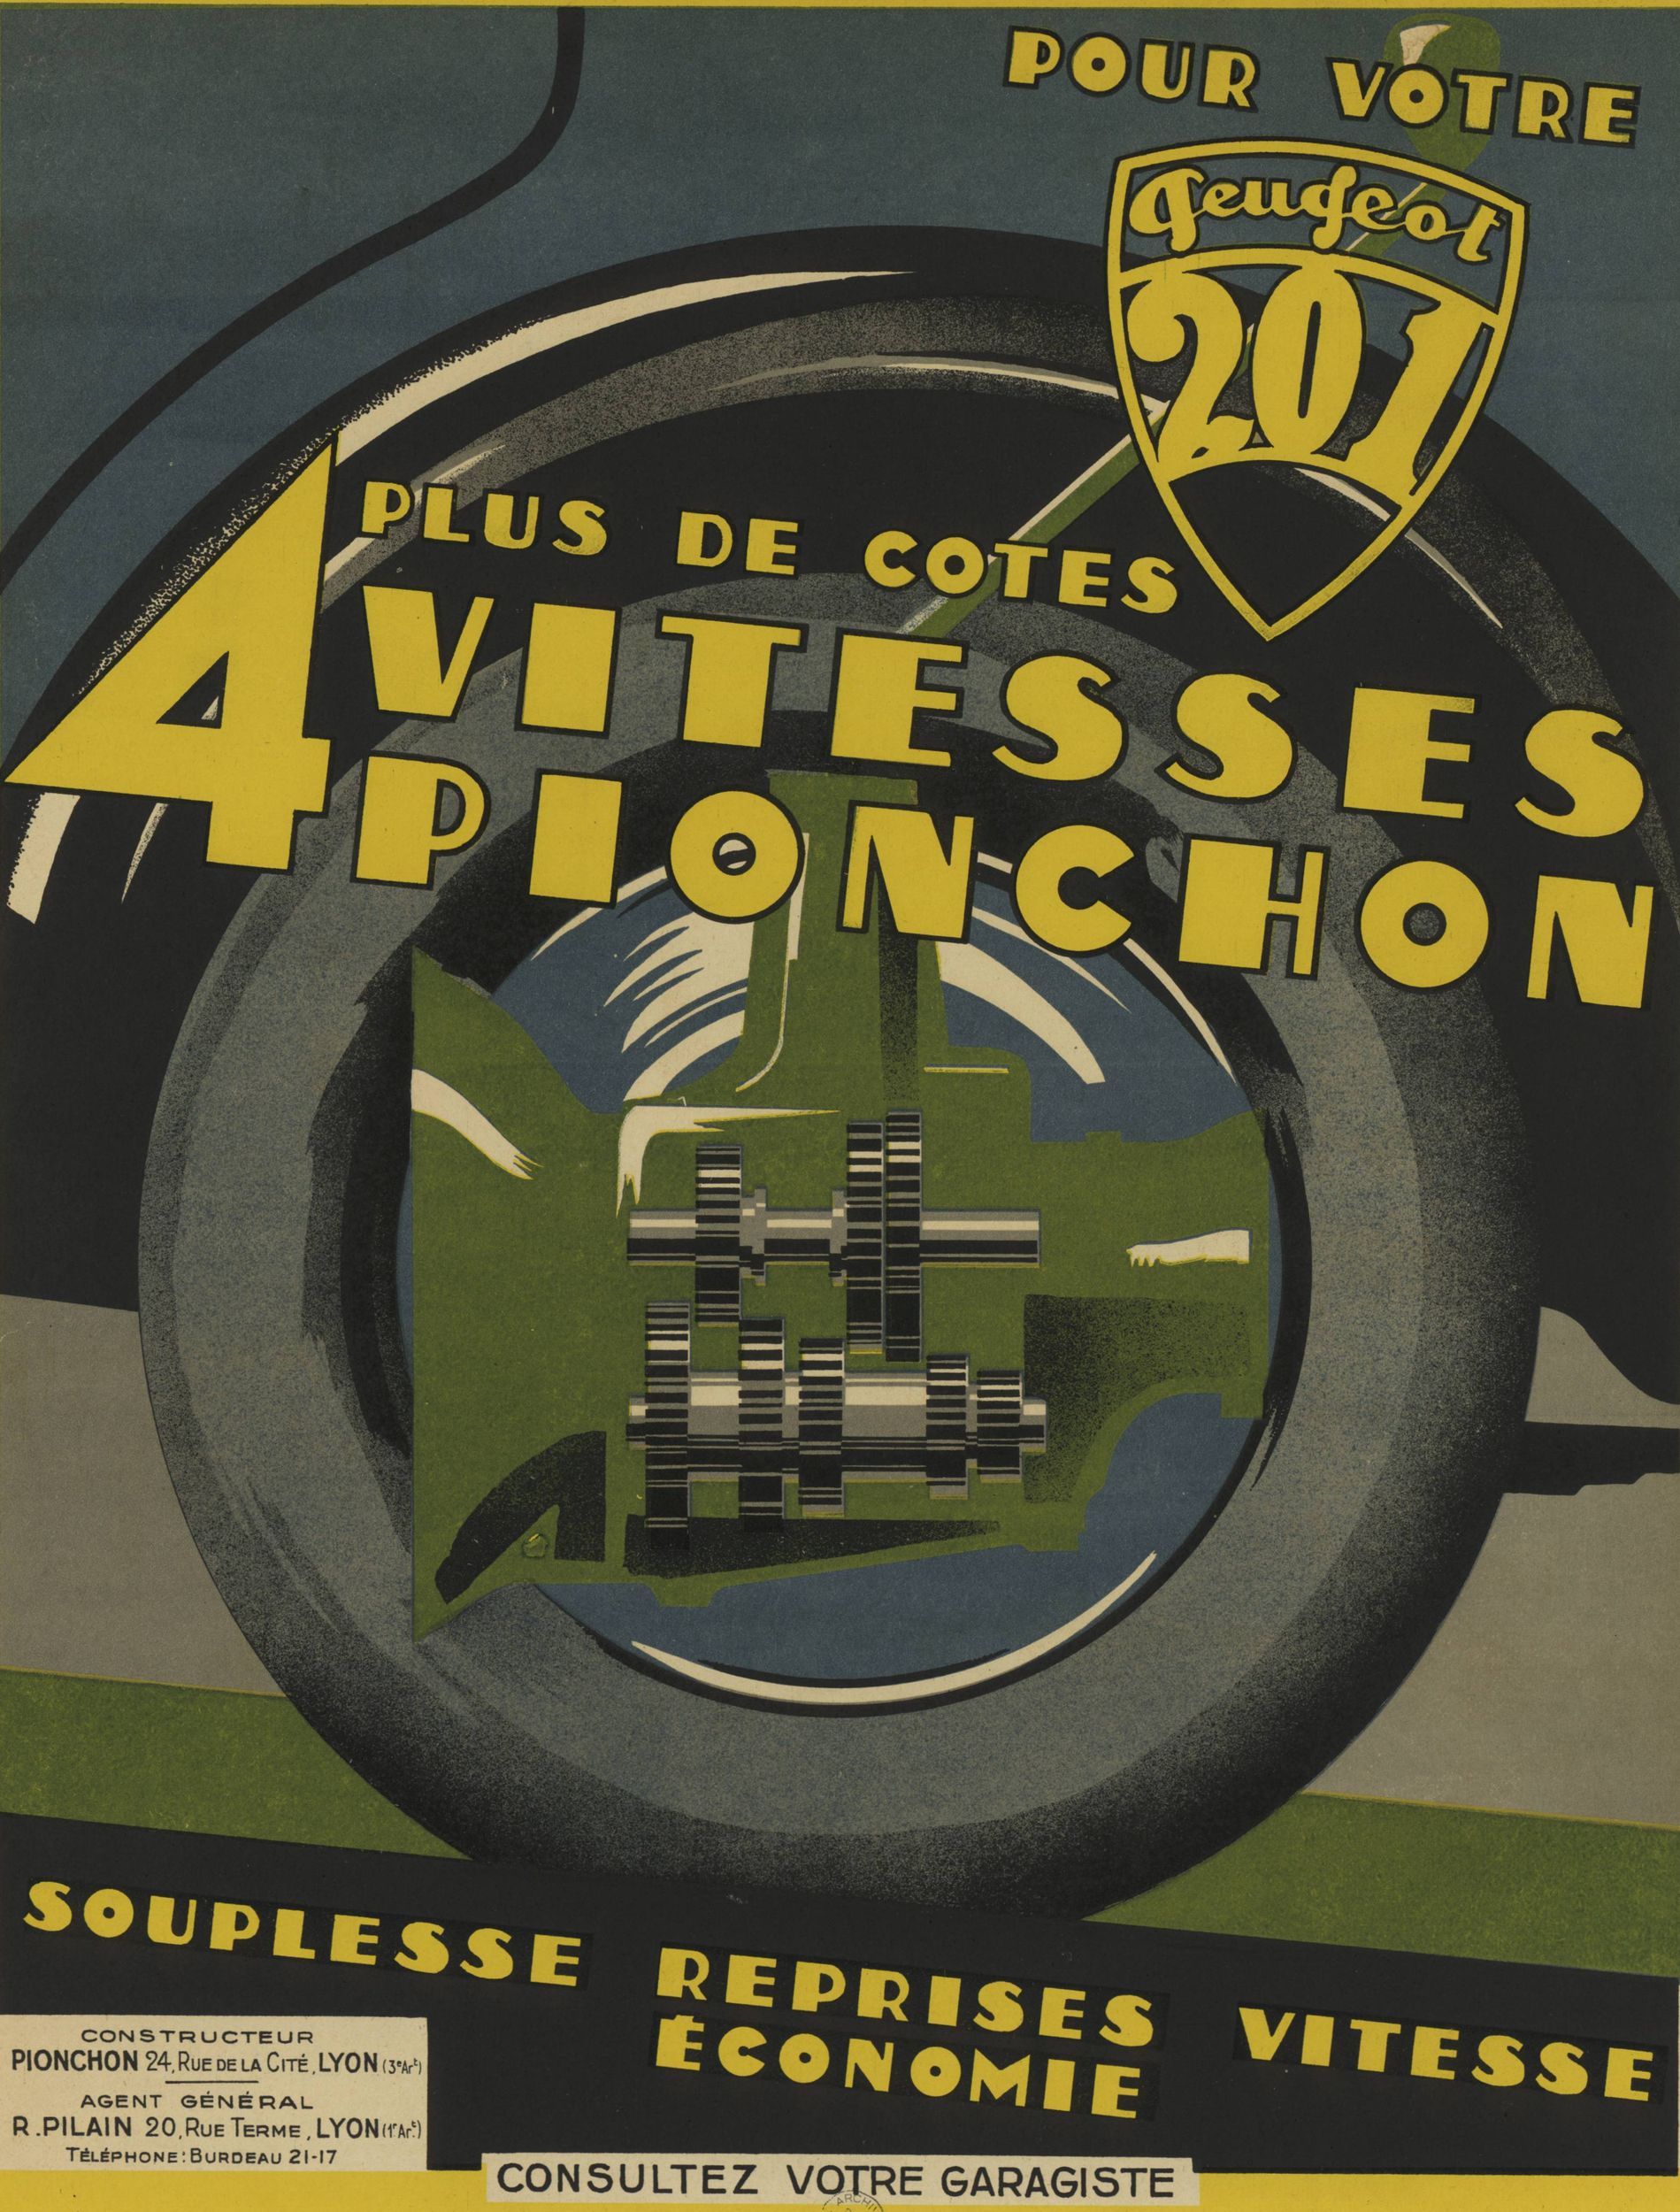 Pour votre Peugeot 201 - Plus de cotes, 4 vitesses Pionchon : affiche publicitaire couleur (1931, cote : 6FI/3196)